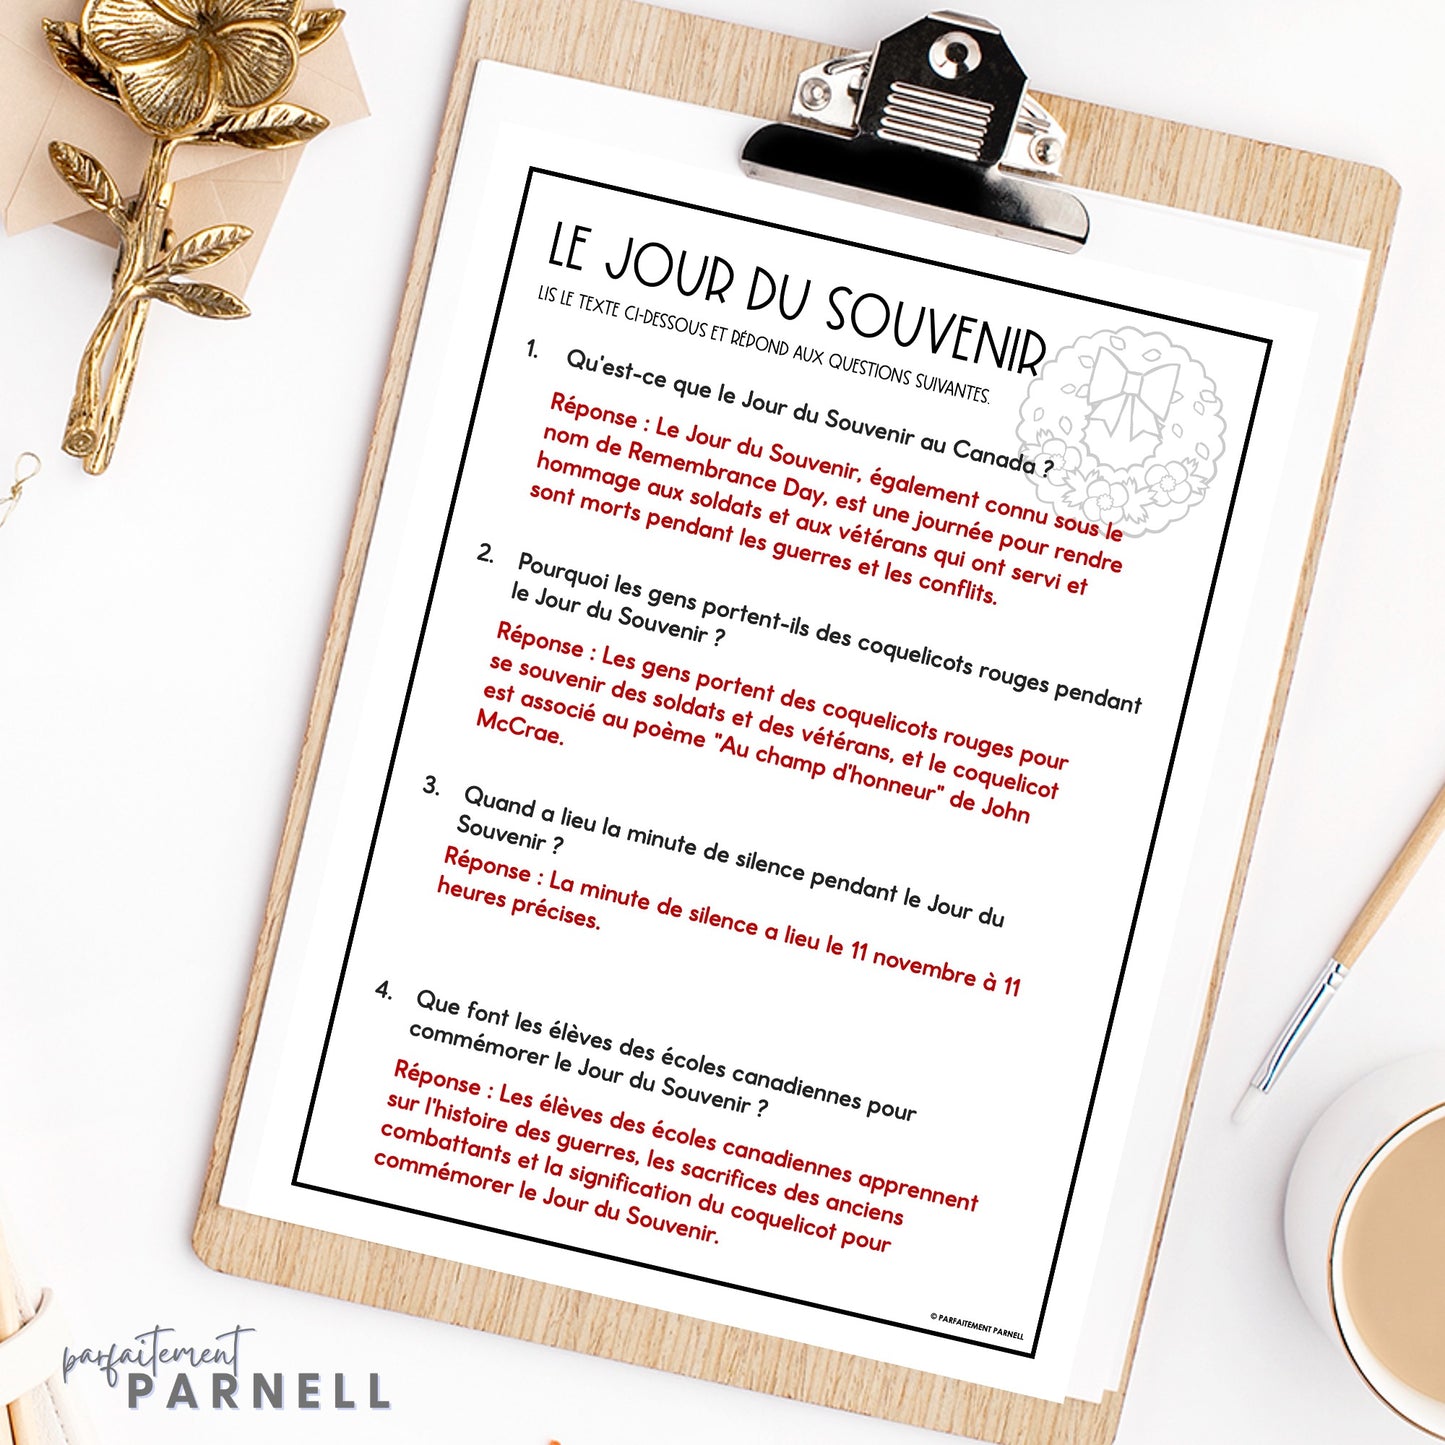 French Reading Comprehension Activity | Le Jour du Souvenir